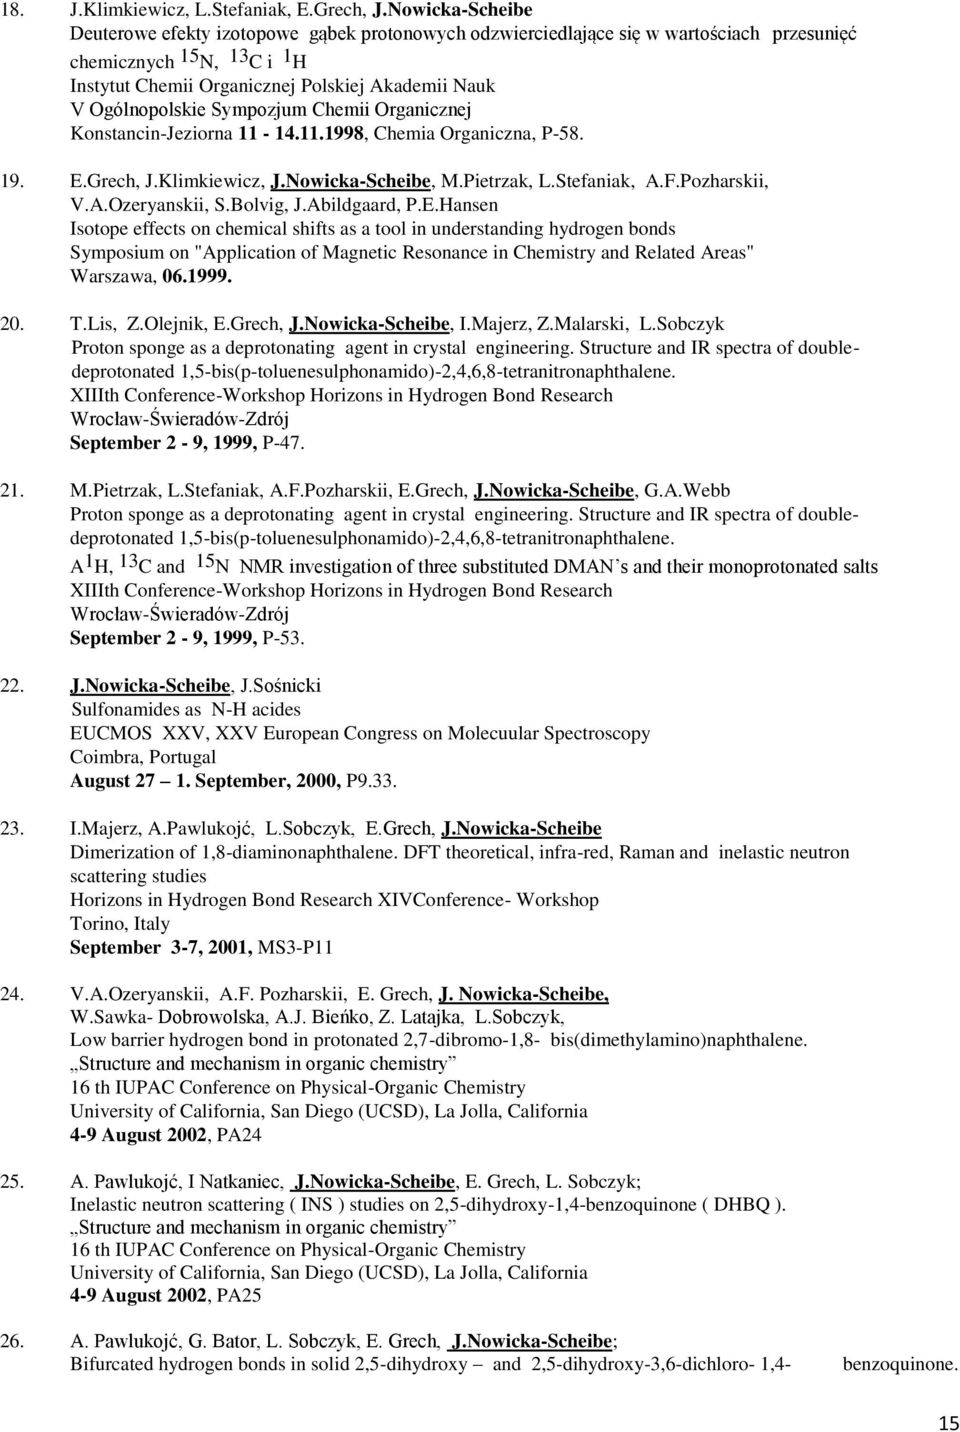 Ogólnopolskie Sympozjum Chemii Organicznej Konstancin-Jeziorna 11-14.11.1998, Chemia Organiczna, P-58. 19. E.Grech, J.Klimkiewicz, J.Nowicka-Scheibe, M.Pietrzak, L.Stefaniak, A.F.Pozharskii, V.A.Ozeryanskii, S.